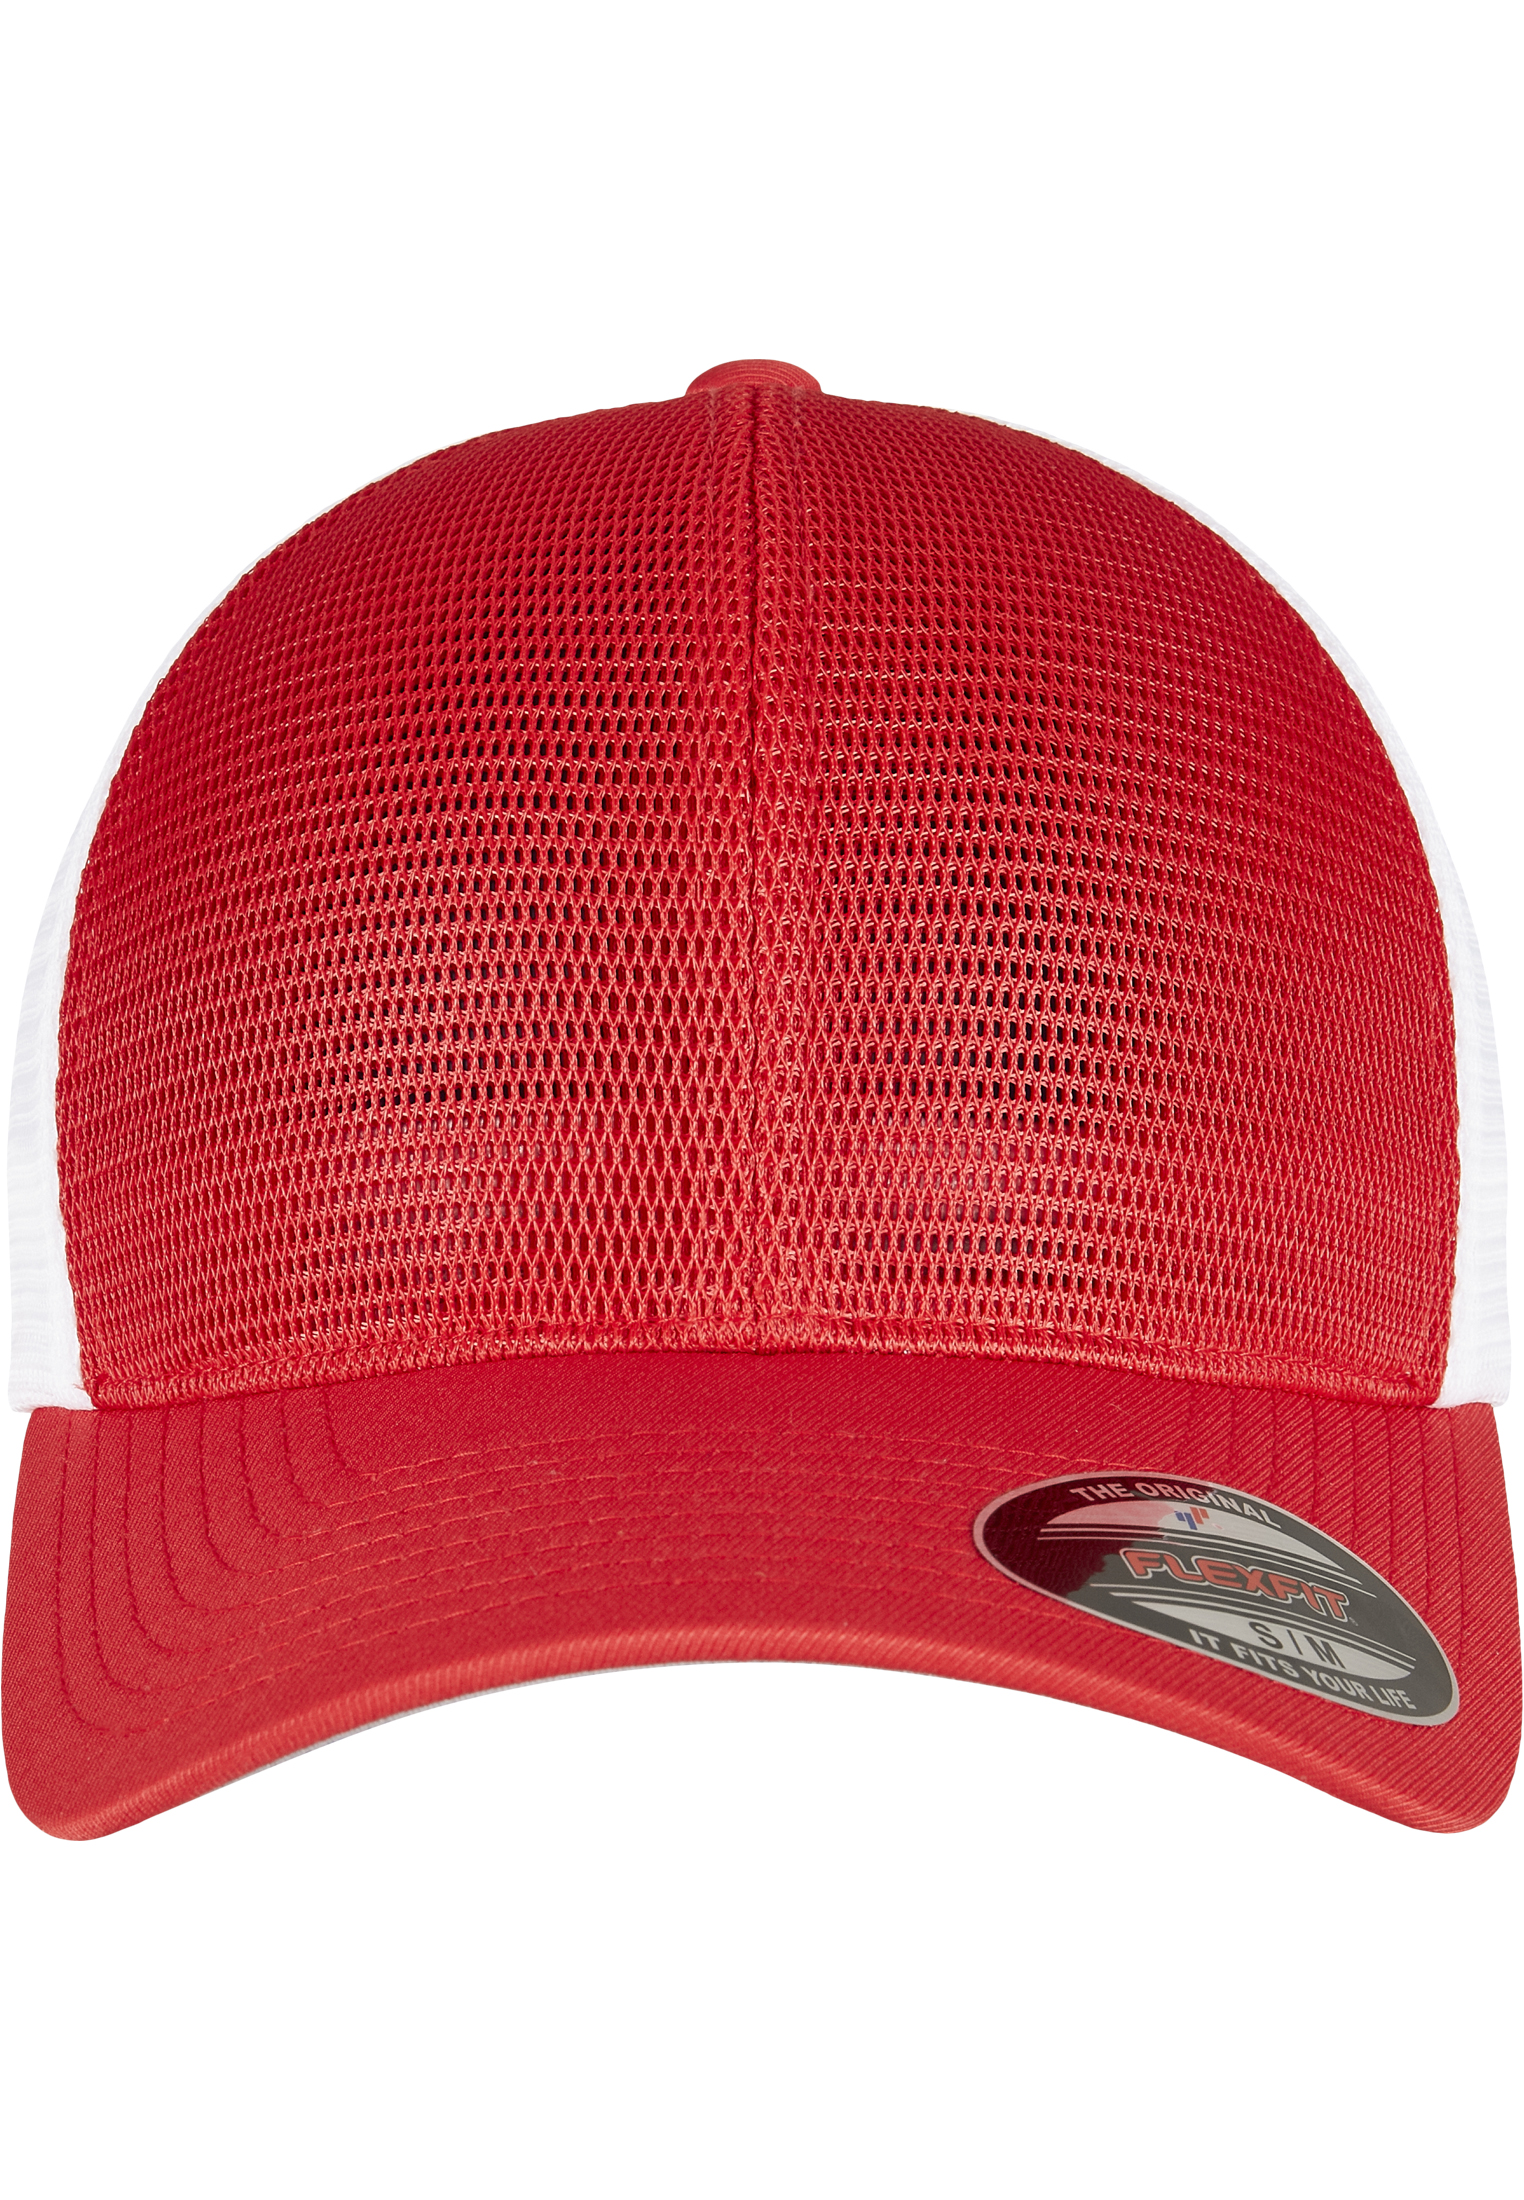 Trucker FLEXFIT 360 OMNIMESH CAP 2-TONE in Farbe red/white